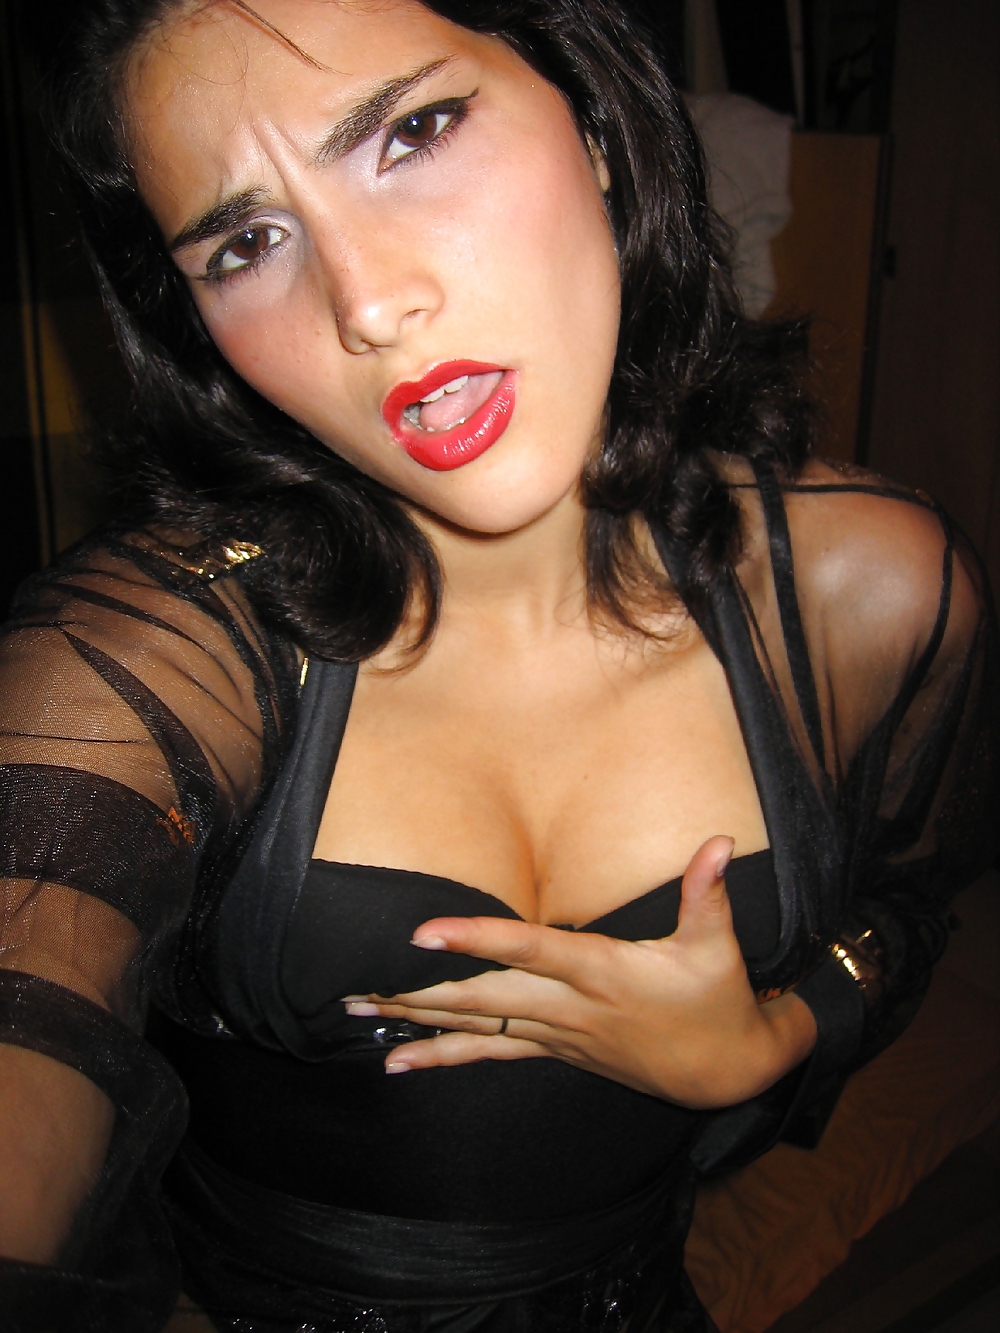 Hot Latina take some nice pics!!! #9861166